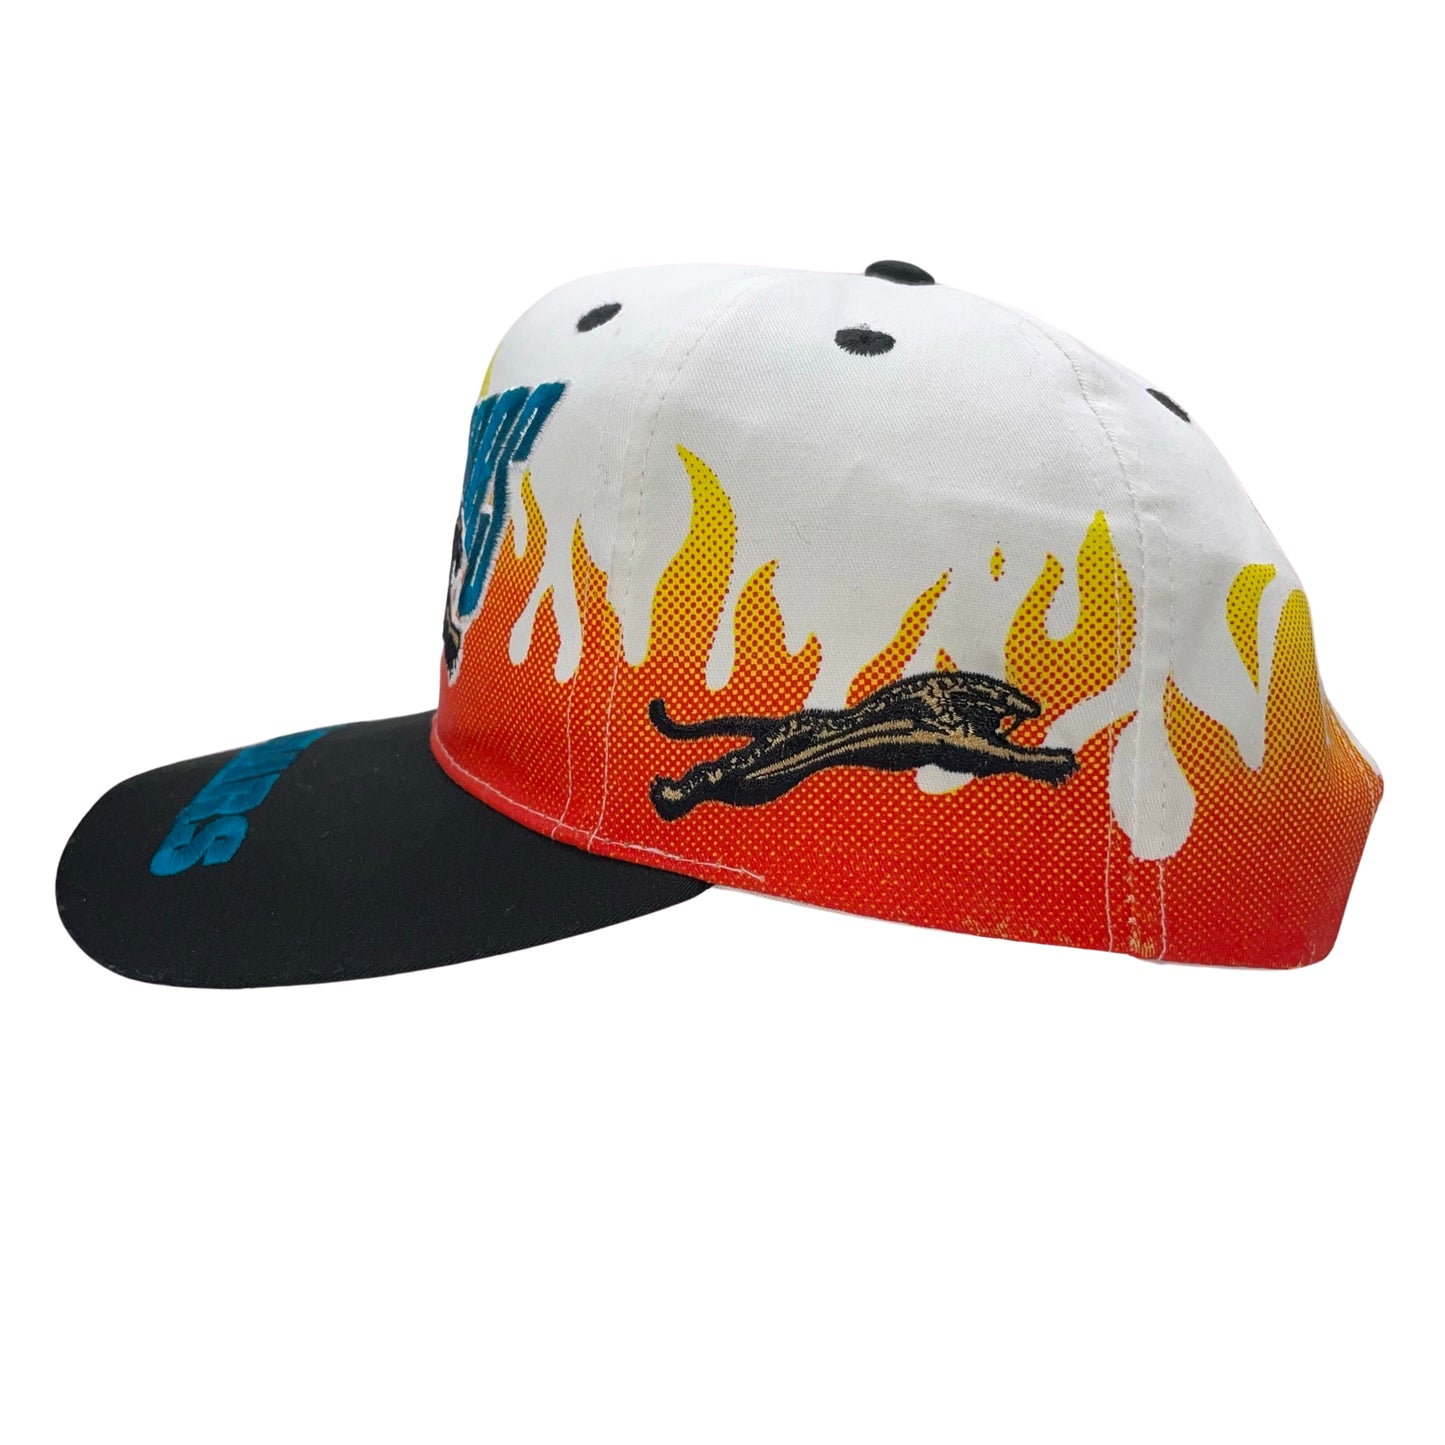 Vintage Jacksonville Jaguars banned logo RARE "On Fire" hat